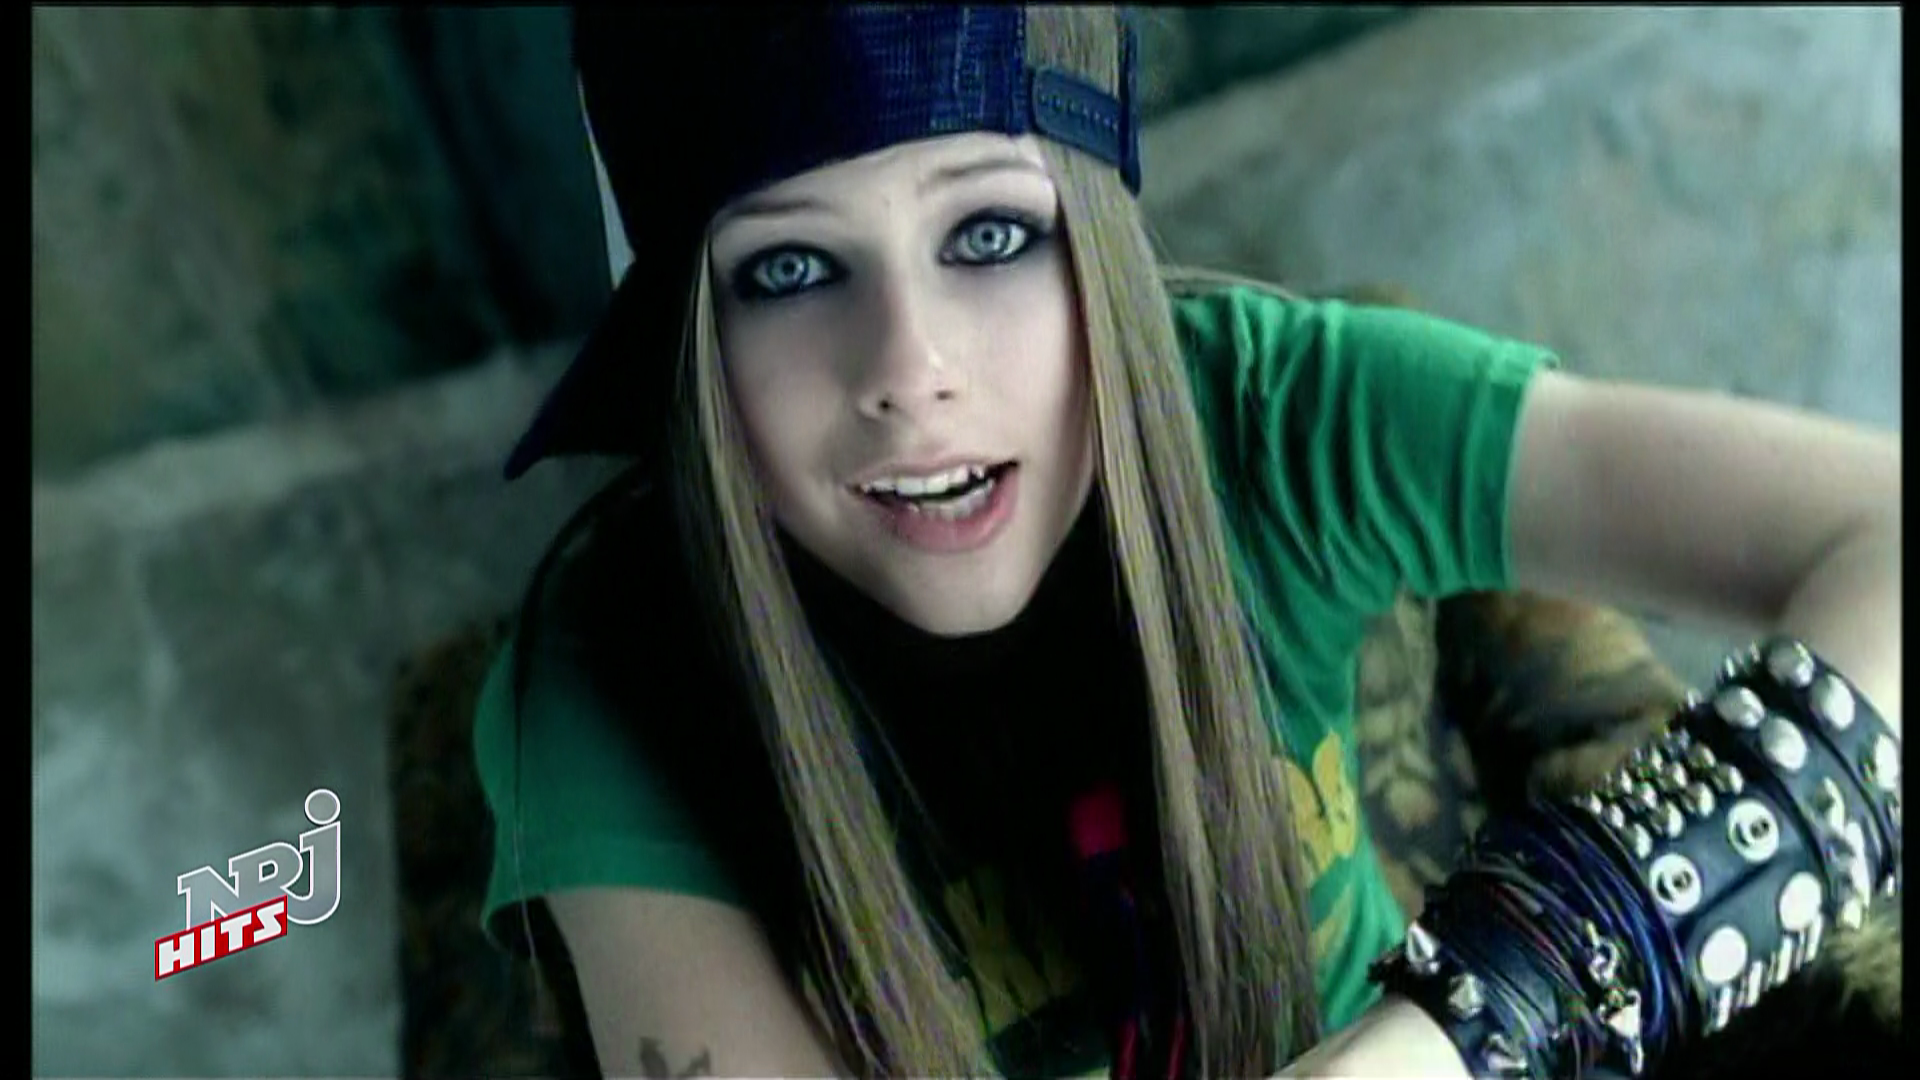 Avril Lavigne Boy. (NRJHITSHD 1080i DD2.0 IboYLDz) HDMania